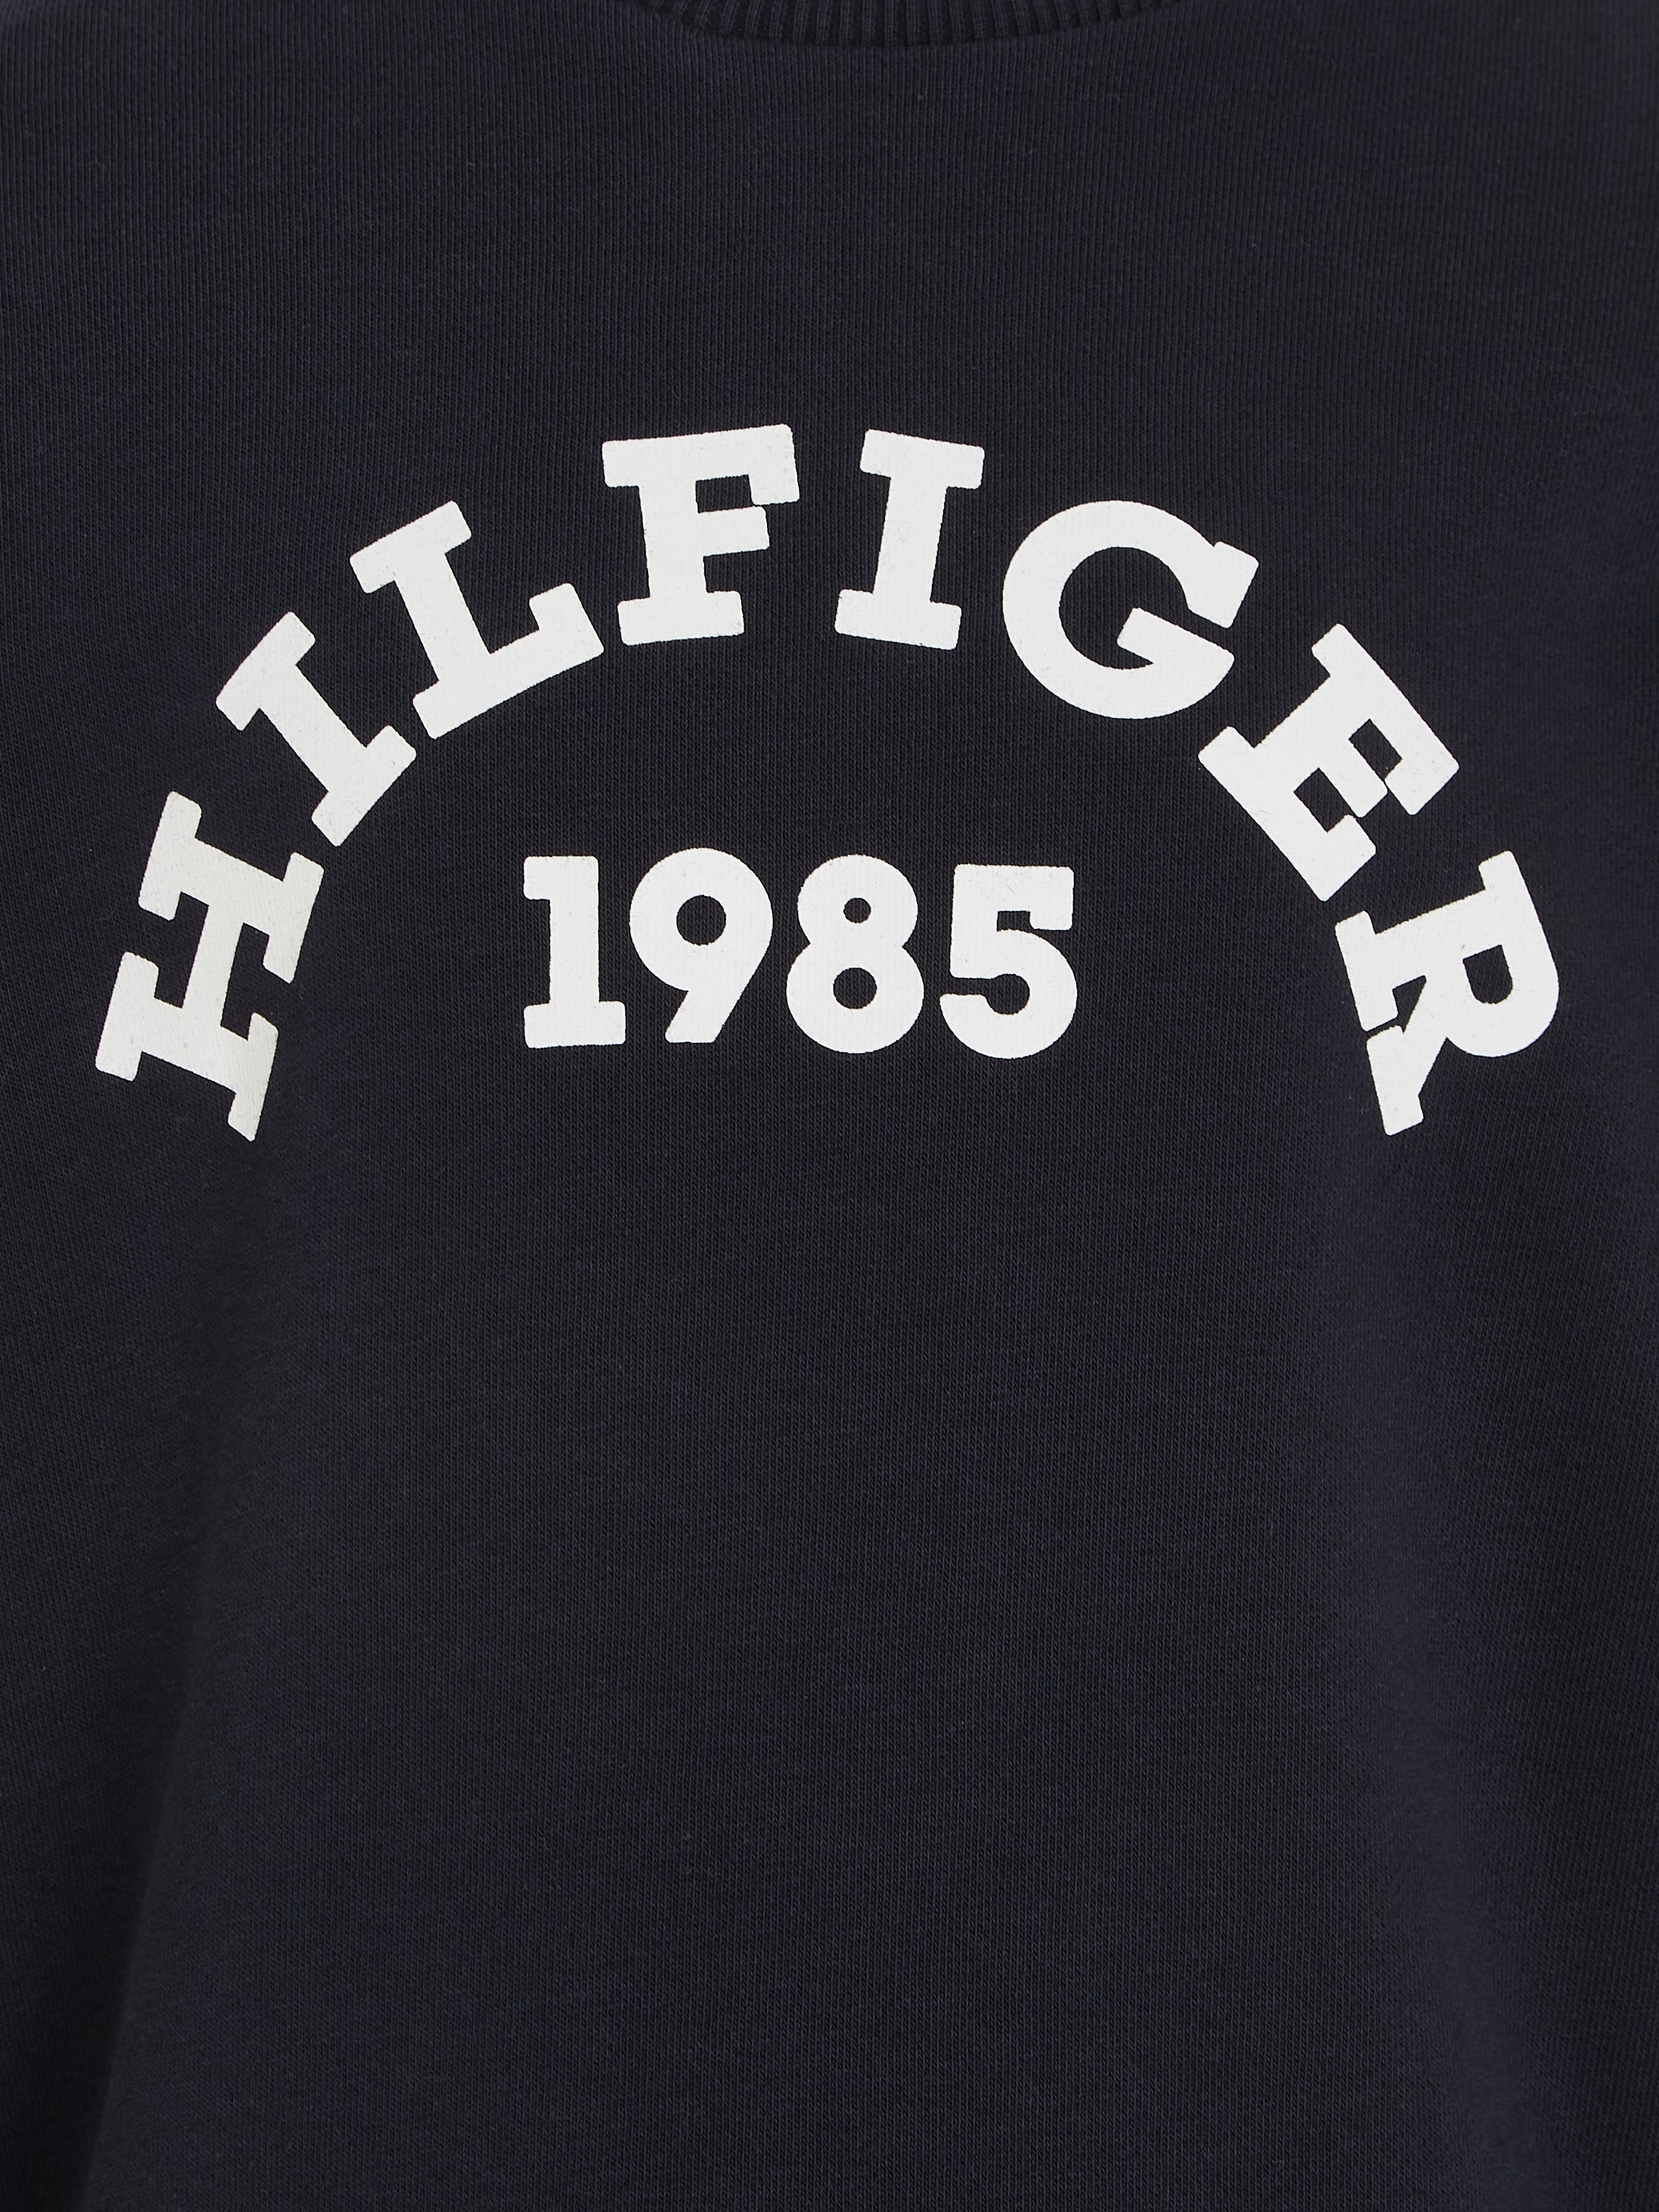 Tommy Hilfiger Sweatshirt »HILFIGER 1985 SWEATSHIRT«, Kinder bis 16 Jahre, mit Logo-Print